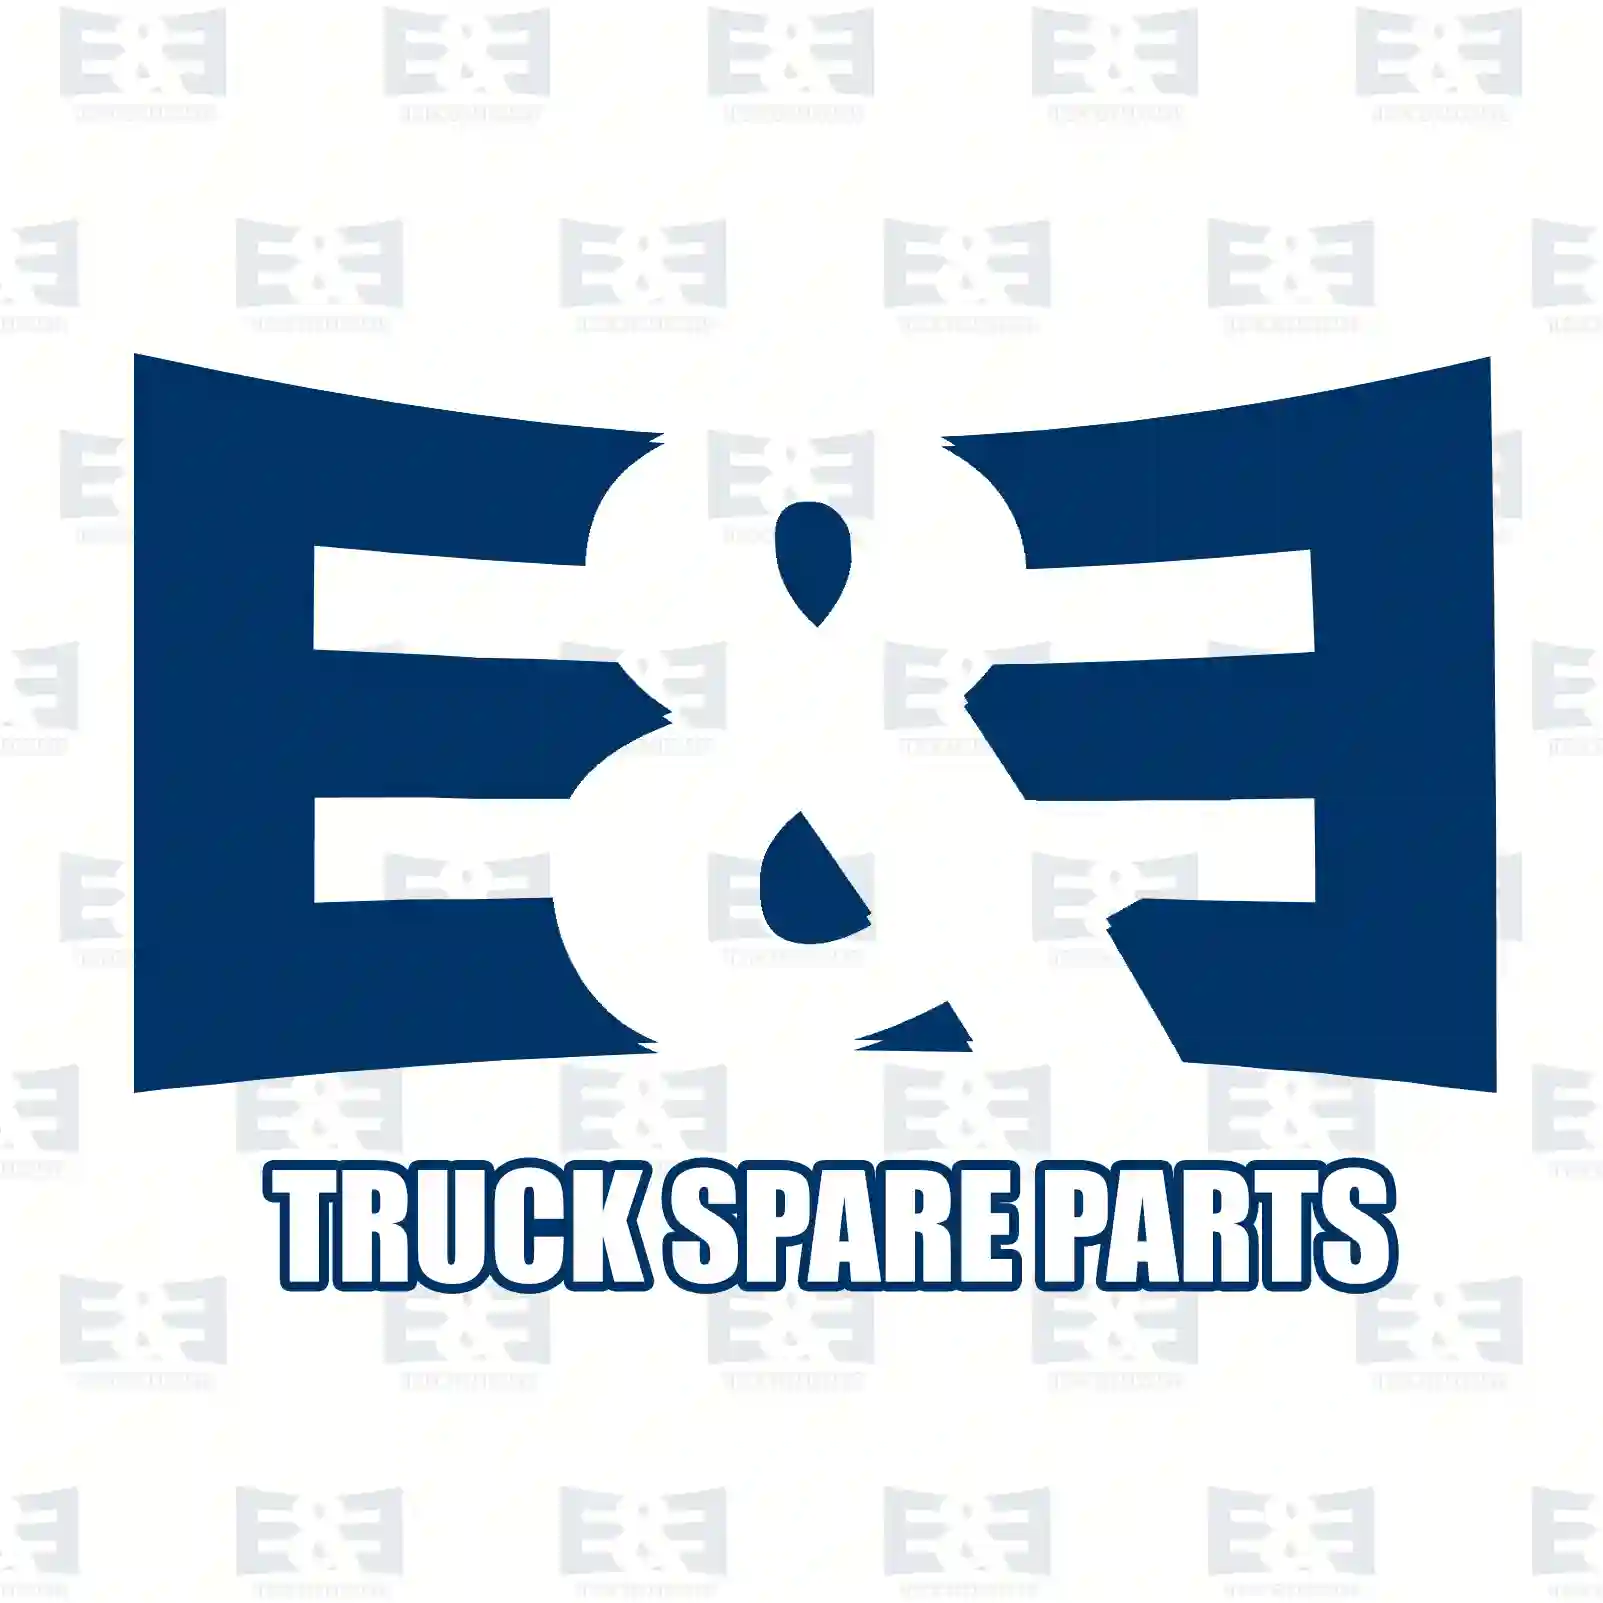 Brake disc, 2E2296241, 6684230412, , , , , , ||  2E2296241 E&E Truck Spare Parts | Truck Spare Parts, Auotomotive Spare Parts Brake disc, 2E2296241, 6684230412, , , , , , ||  2E2296241 E&E Truck Spare Parts | Truck Spare Parts, Auotomotive Spare Parts